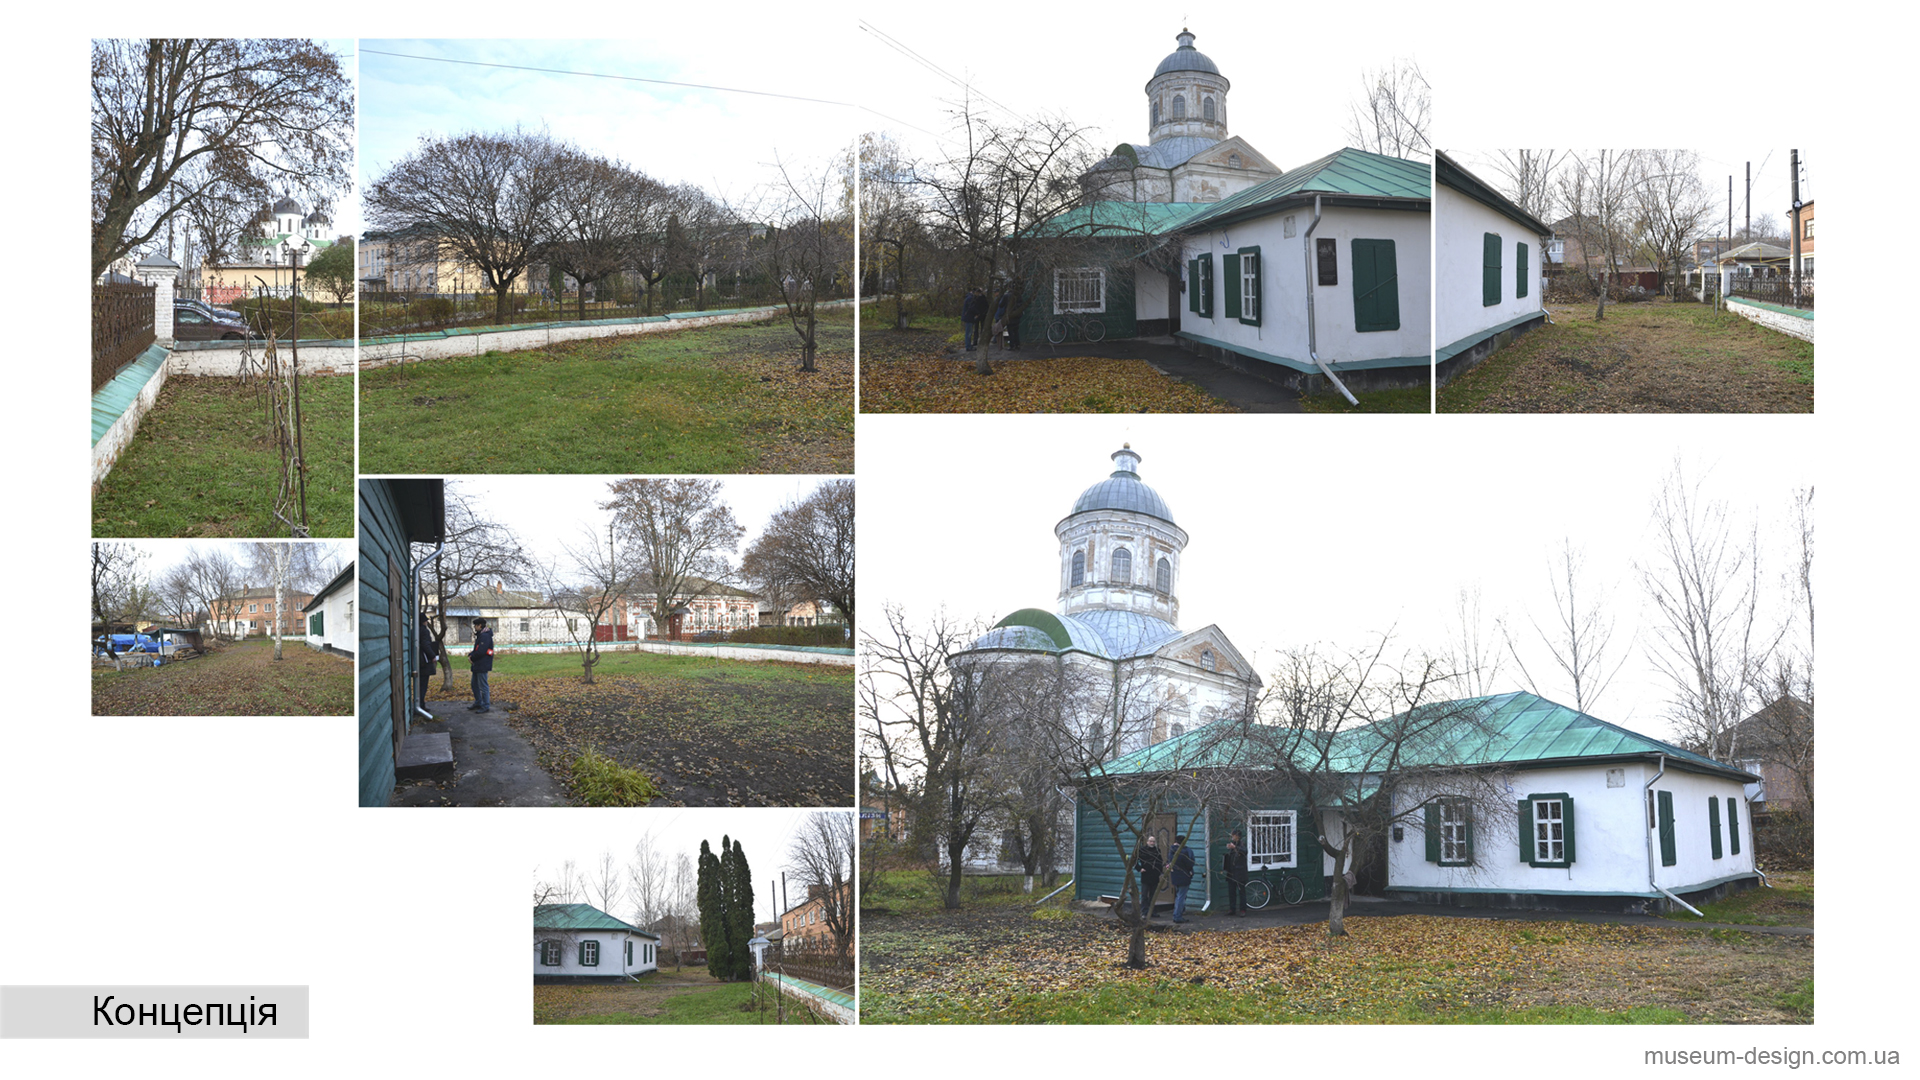 Меморіальний будинок-музей Юрія Лисянського (2020 р.)